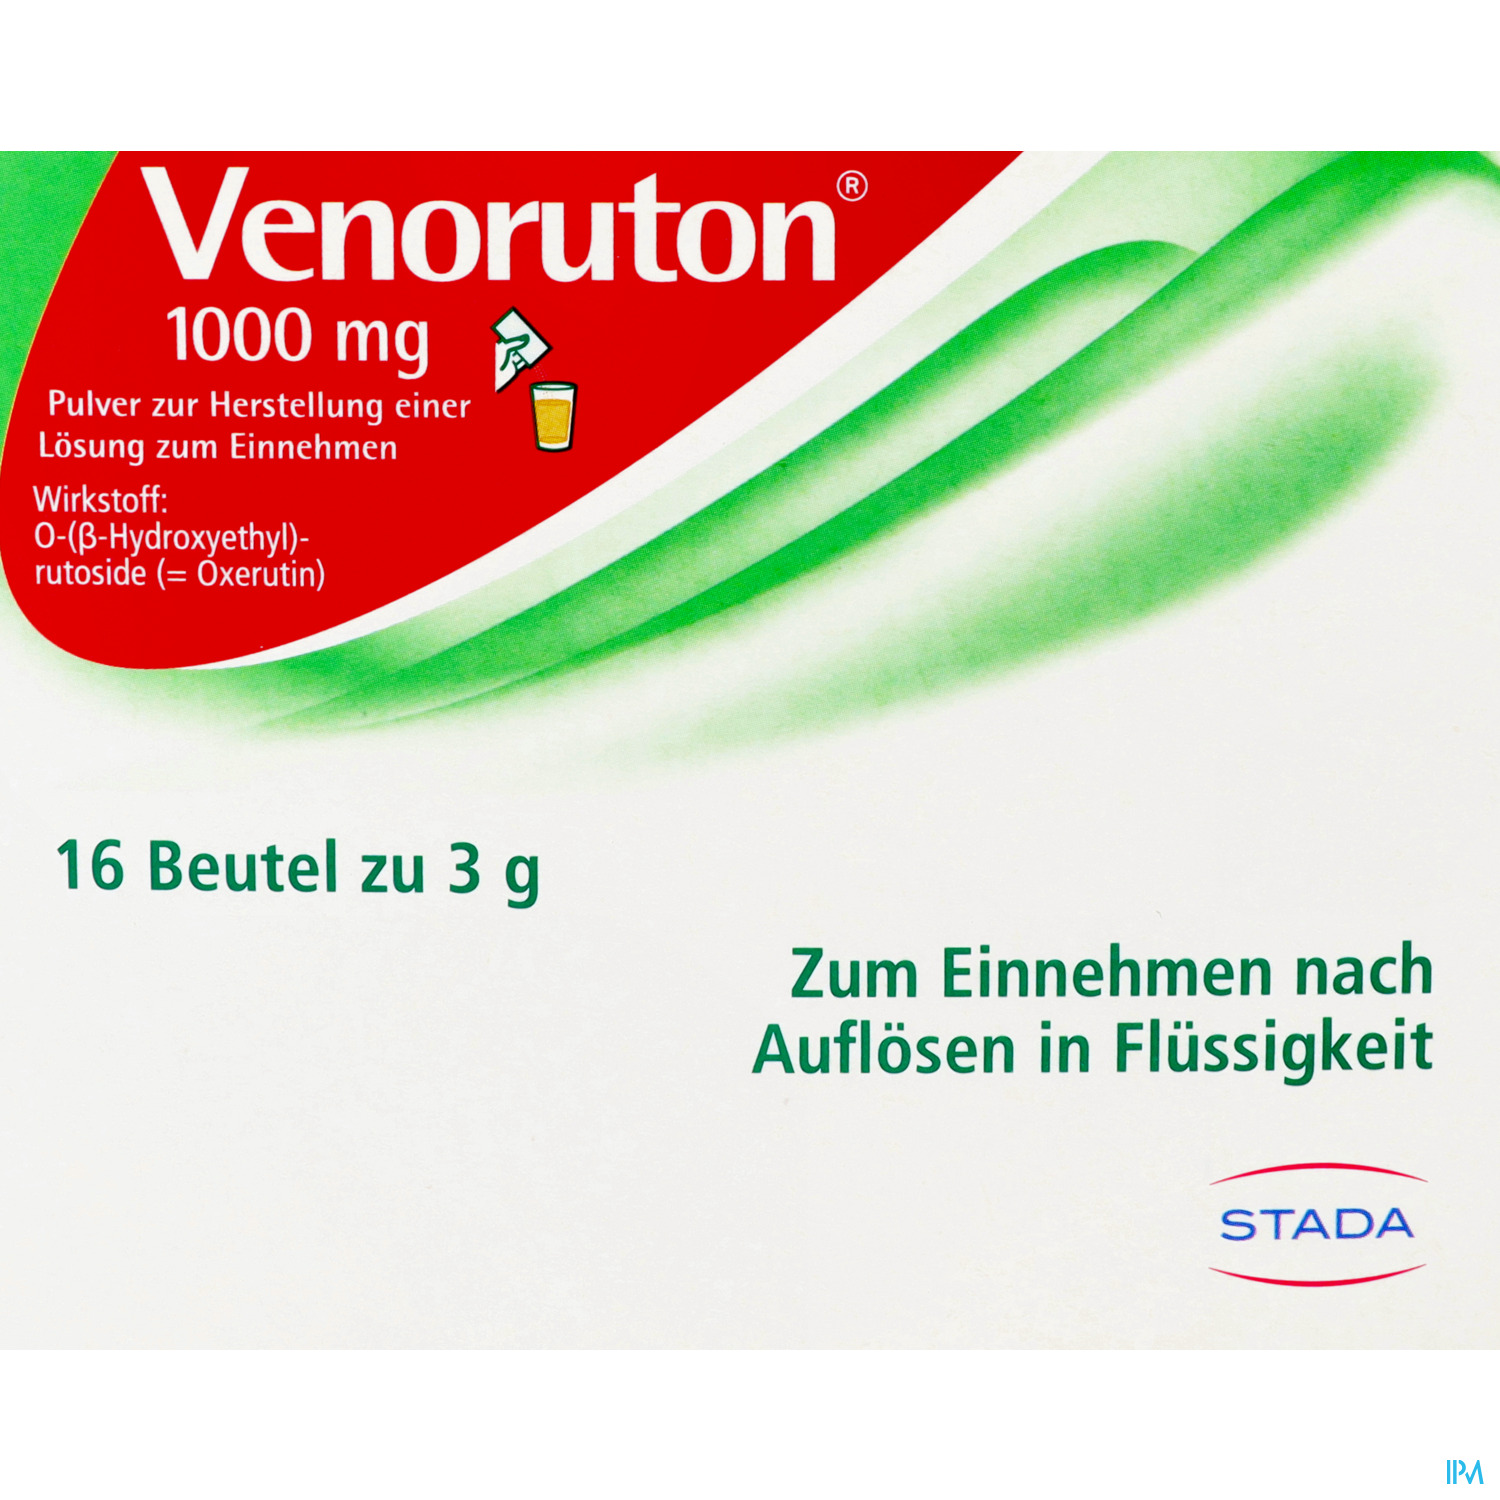 Venoruton 1000 mg - Pulver zur Herstellung einer Lösung zum Einnehmen